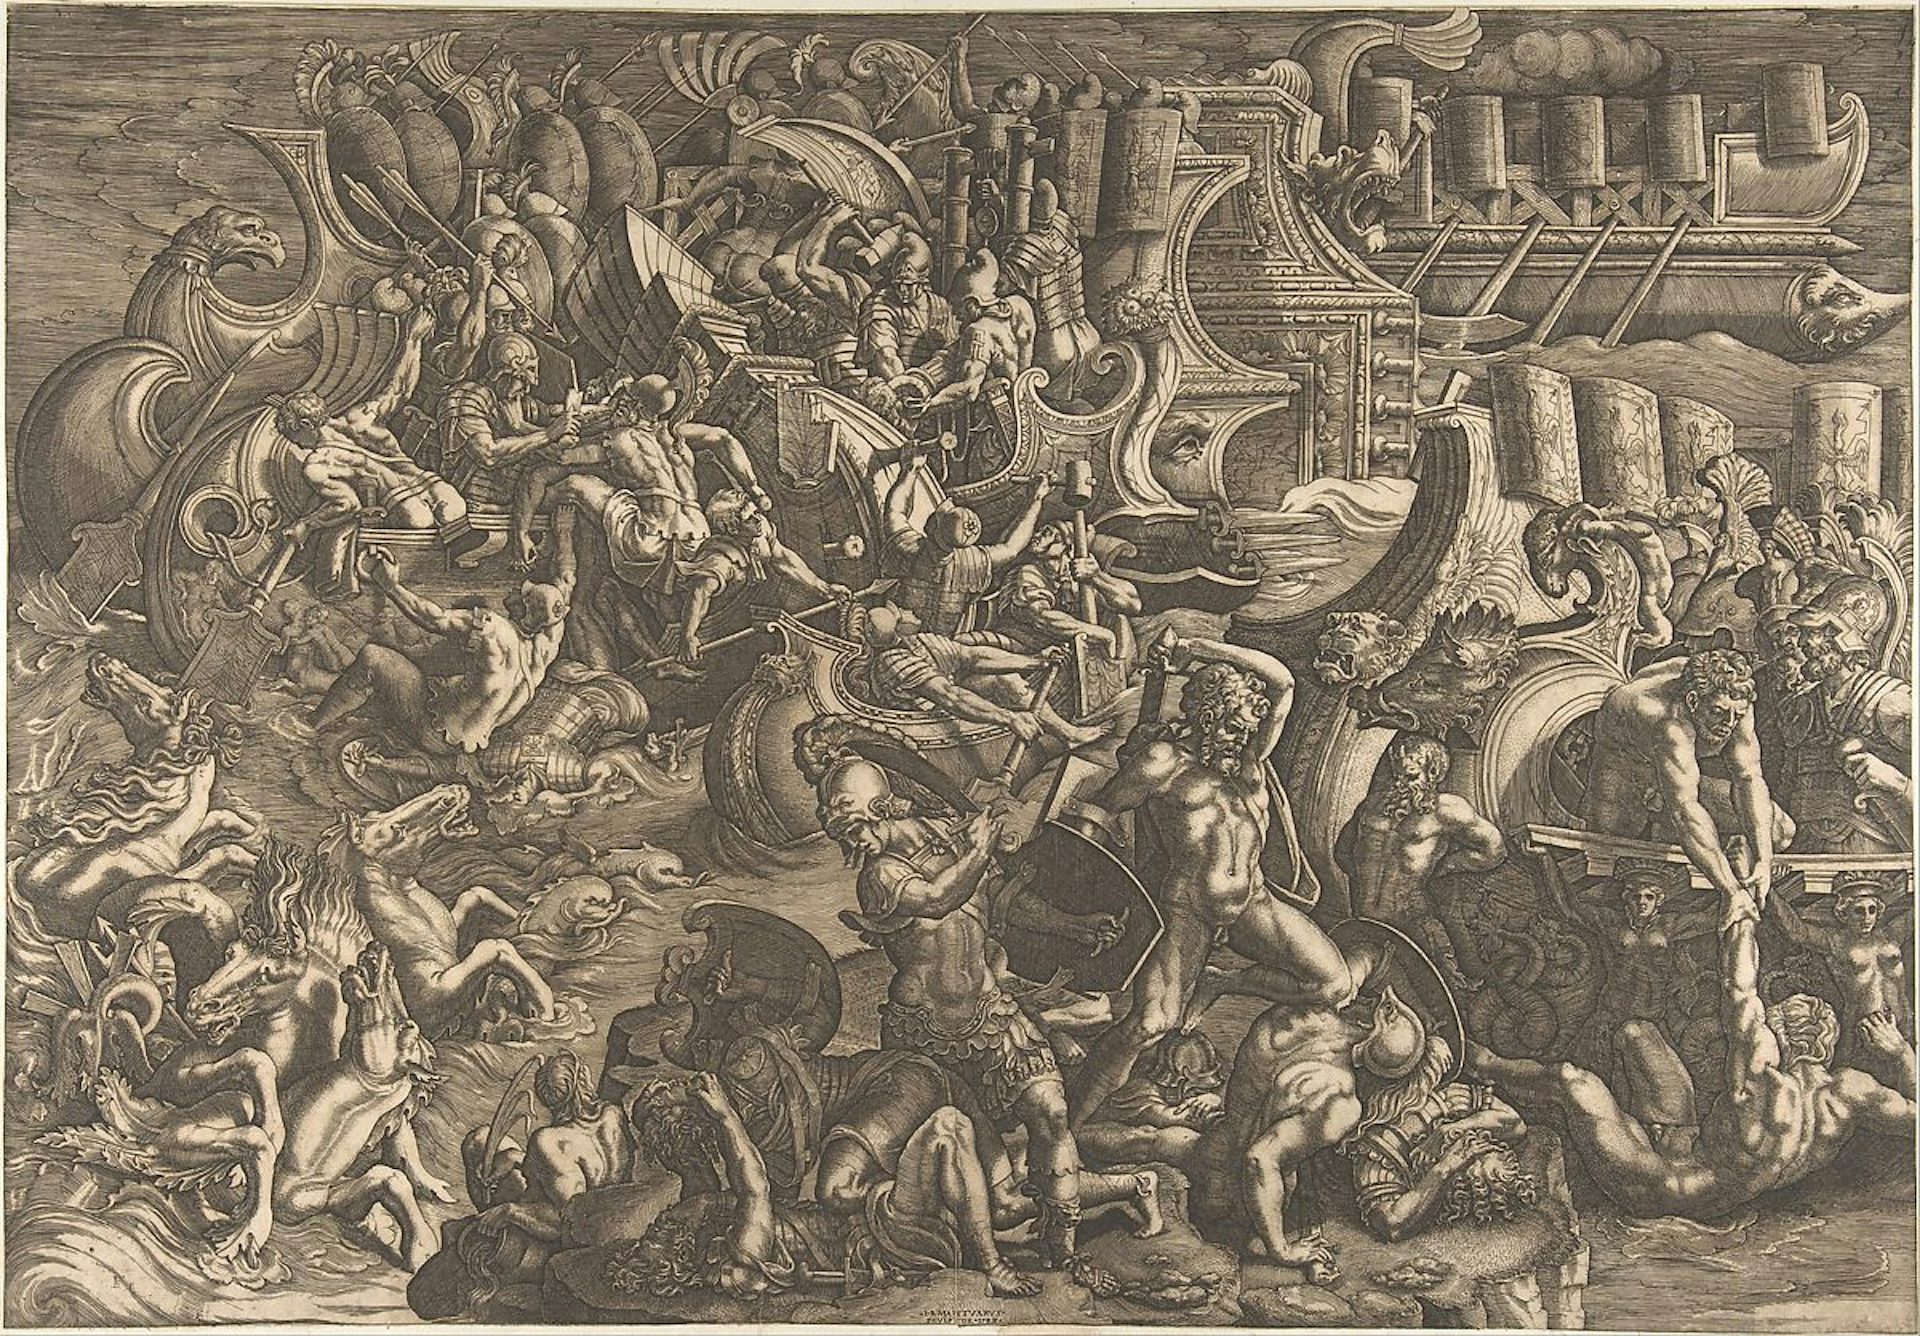 Trojans repulsing the Greeks-Scultori 1538